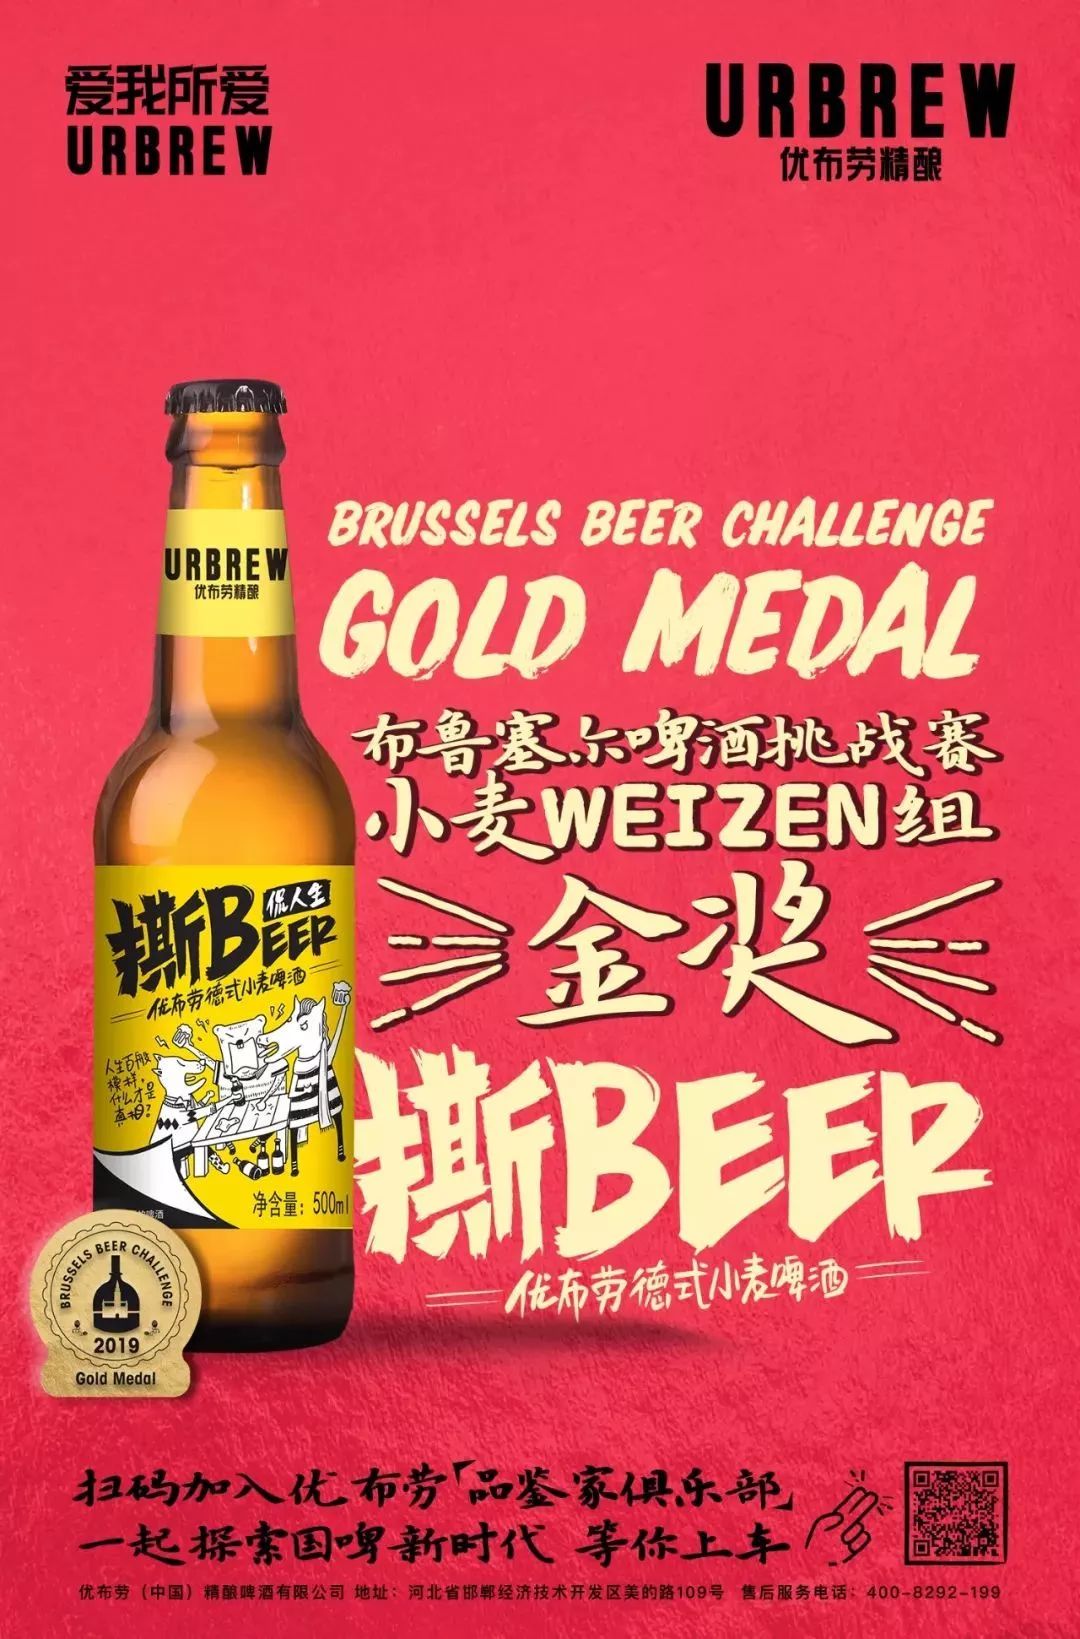 优布劳撕beer德式小麦啤酒在"小麦weizen"组的激烈评比中,杀出重围